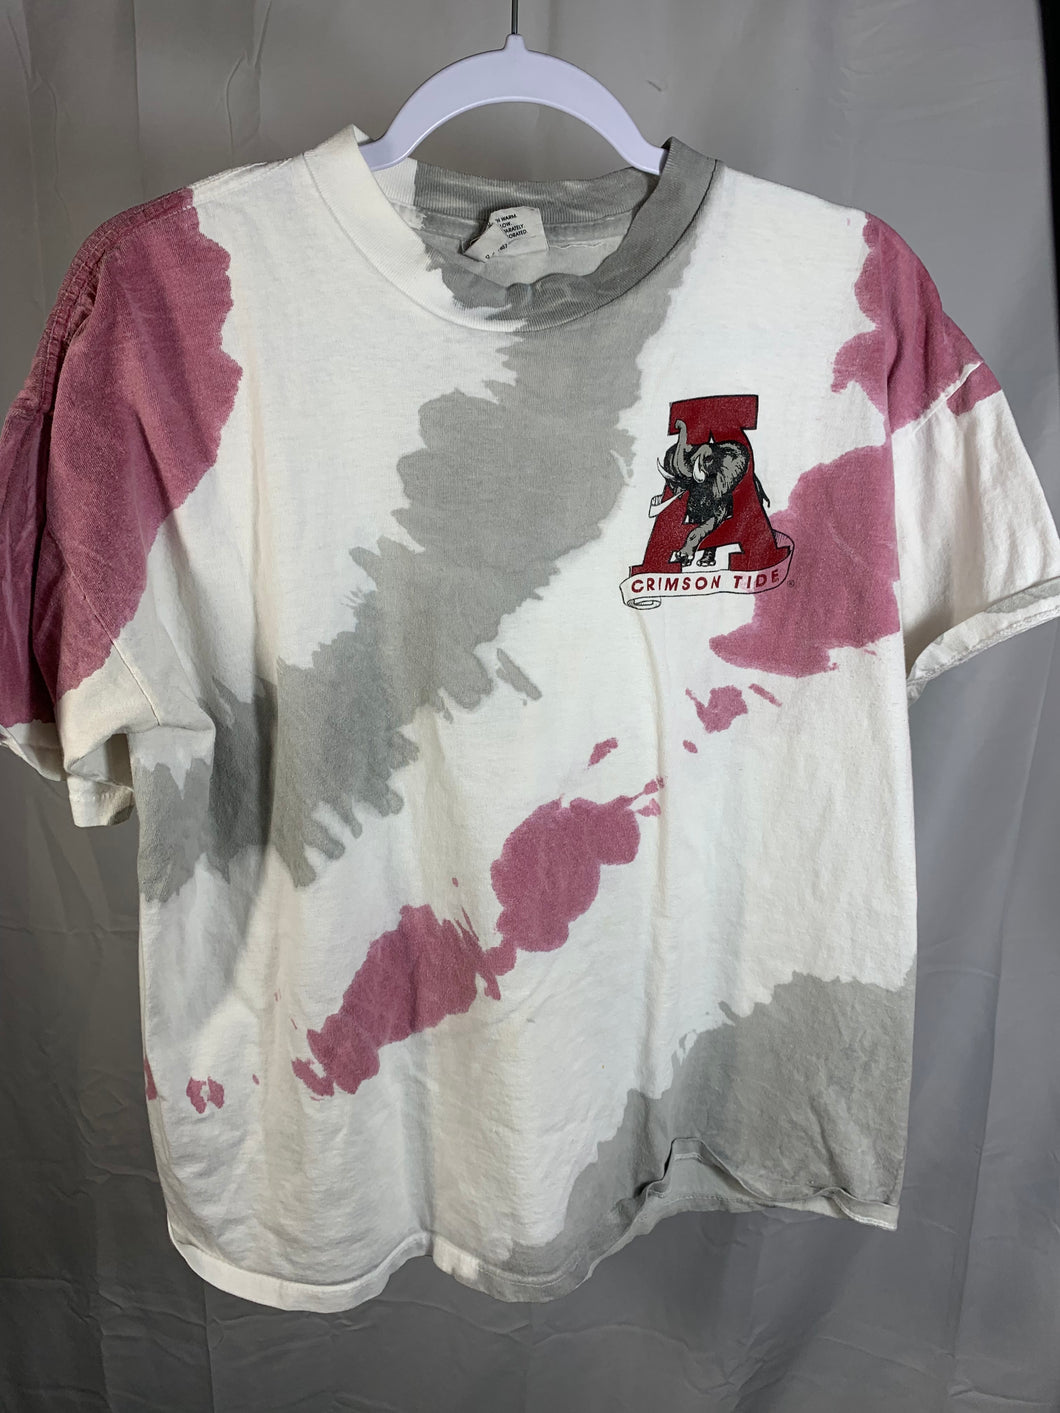 Vintage Alabama Tie Dye T-Shirt Large